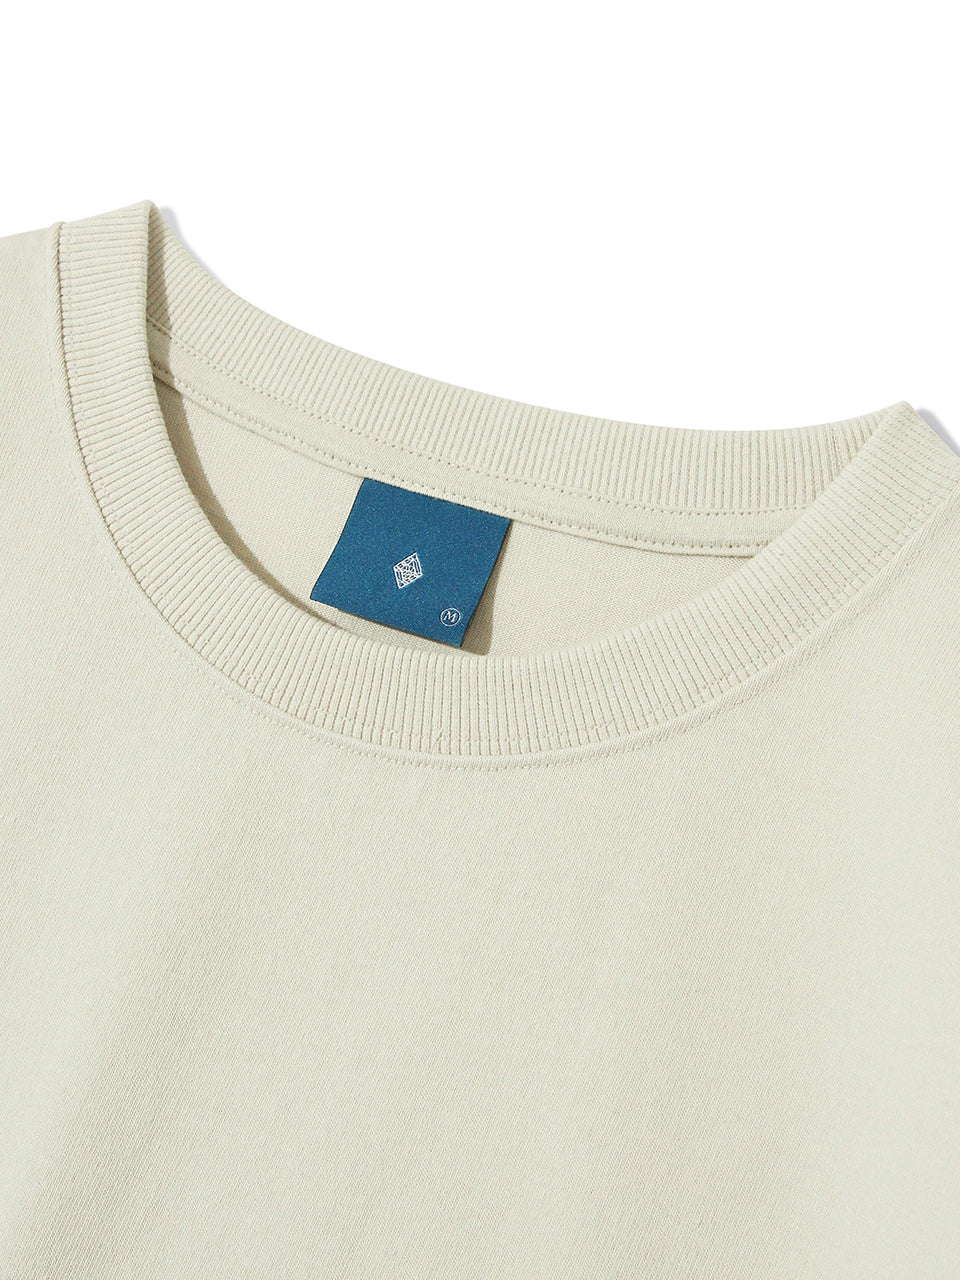 DML Stitch Logo Short Sleeve T-shirt T78 Beige